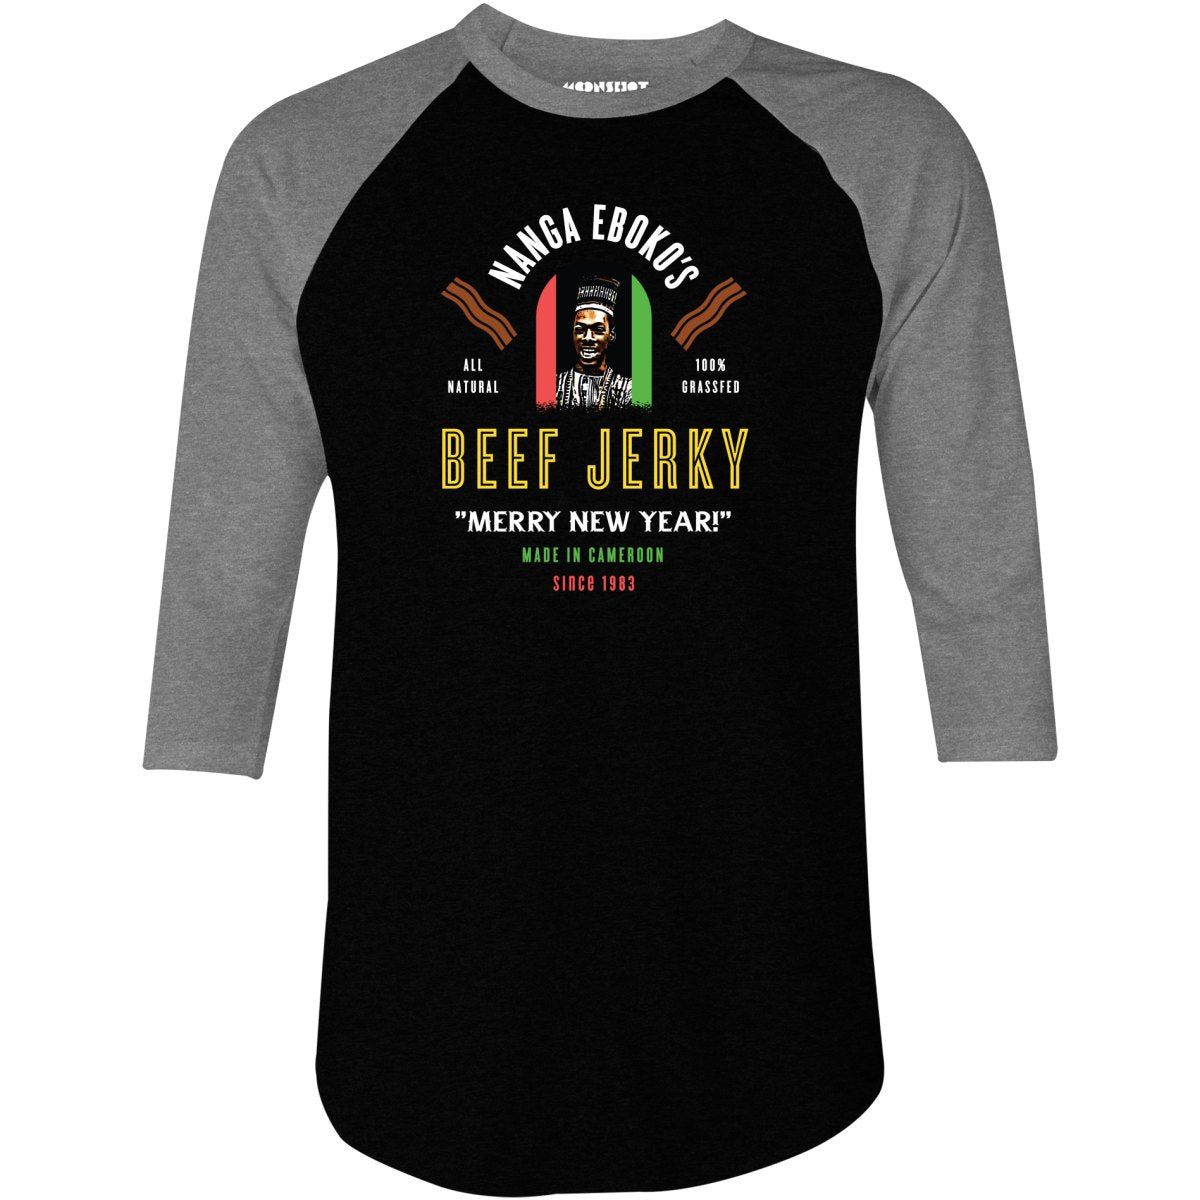 Nanga Eboko's Beef Jerky - 3/4 Sleeve Raglan T-Shirt